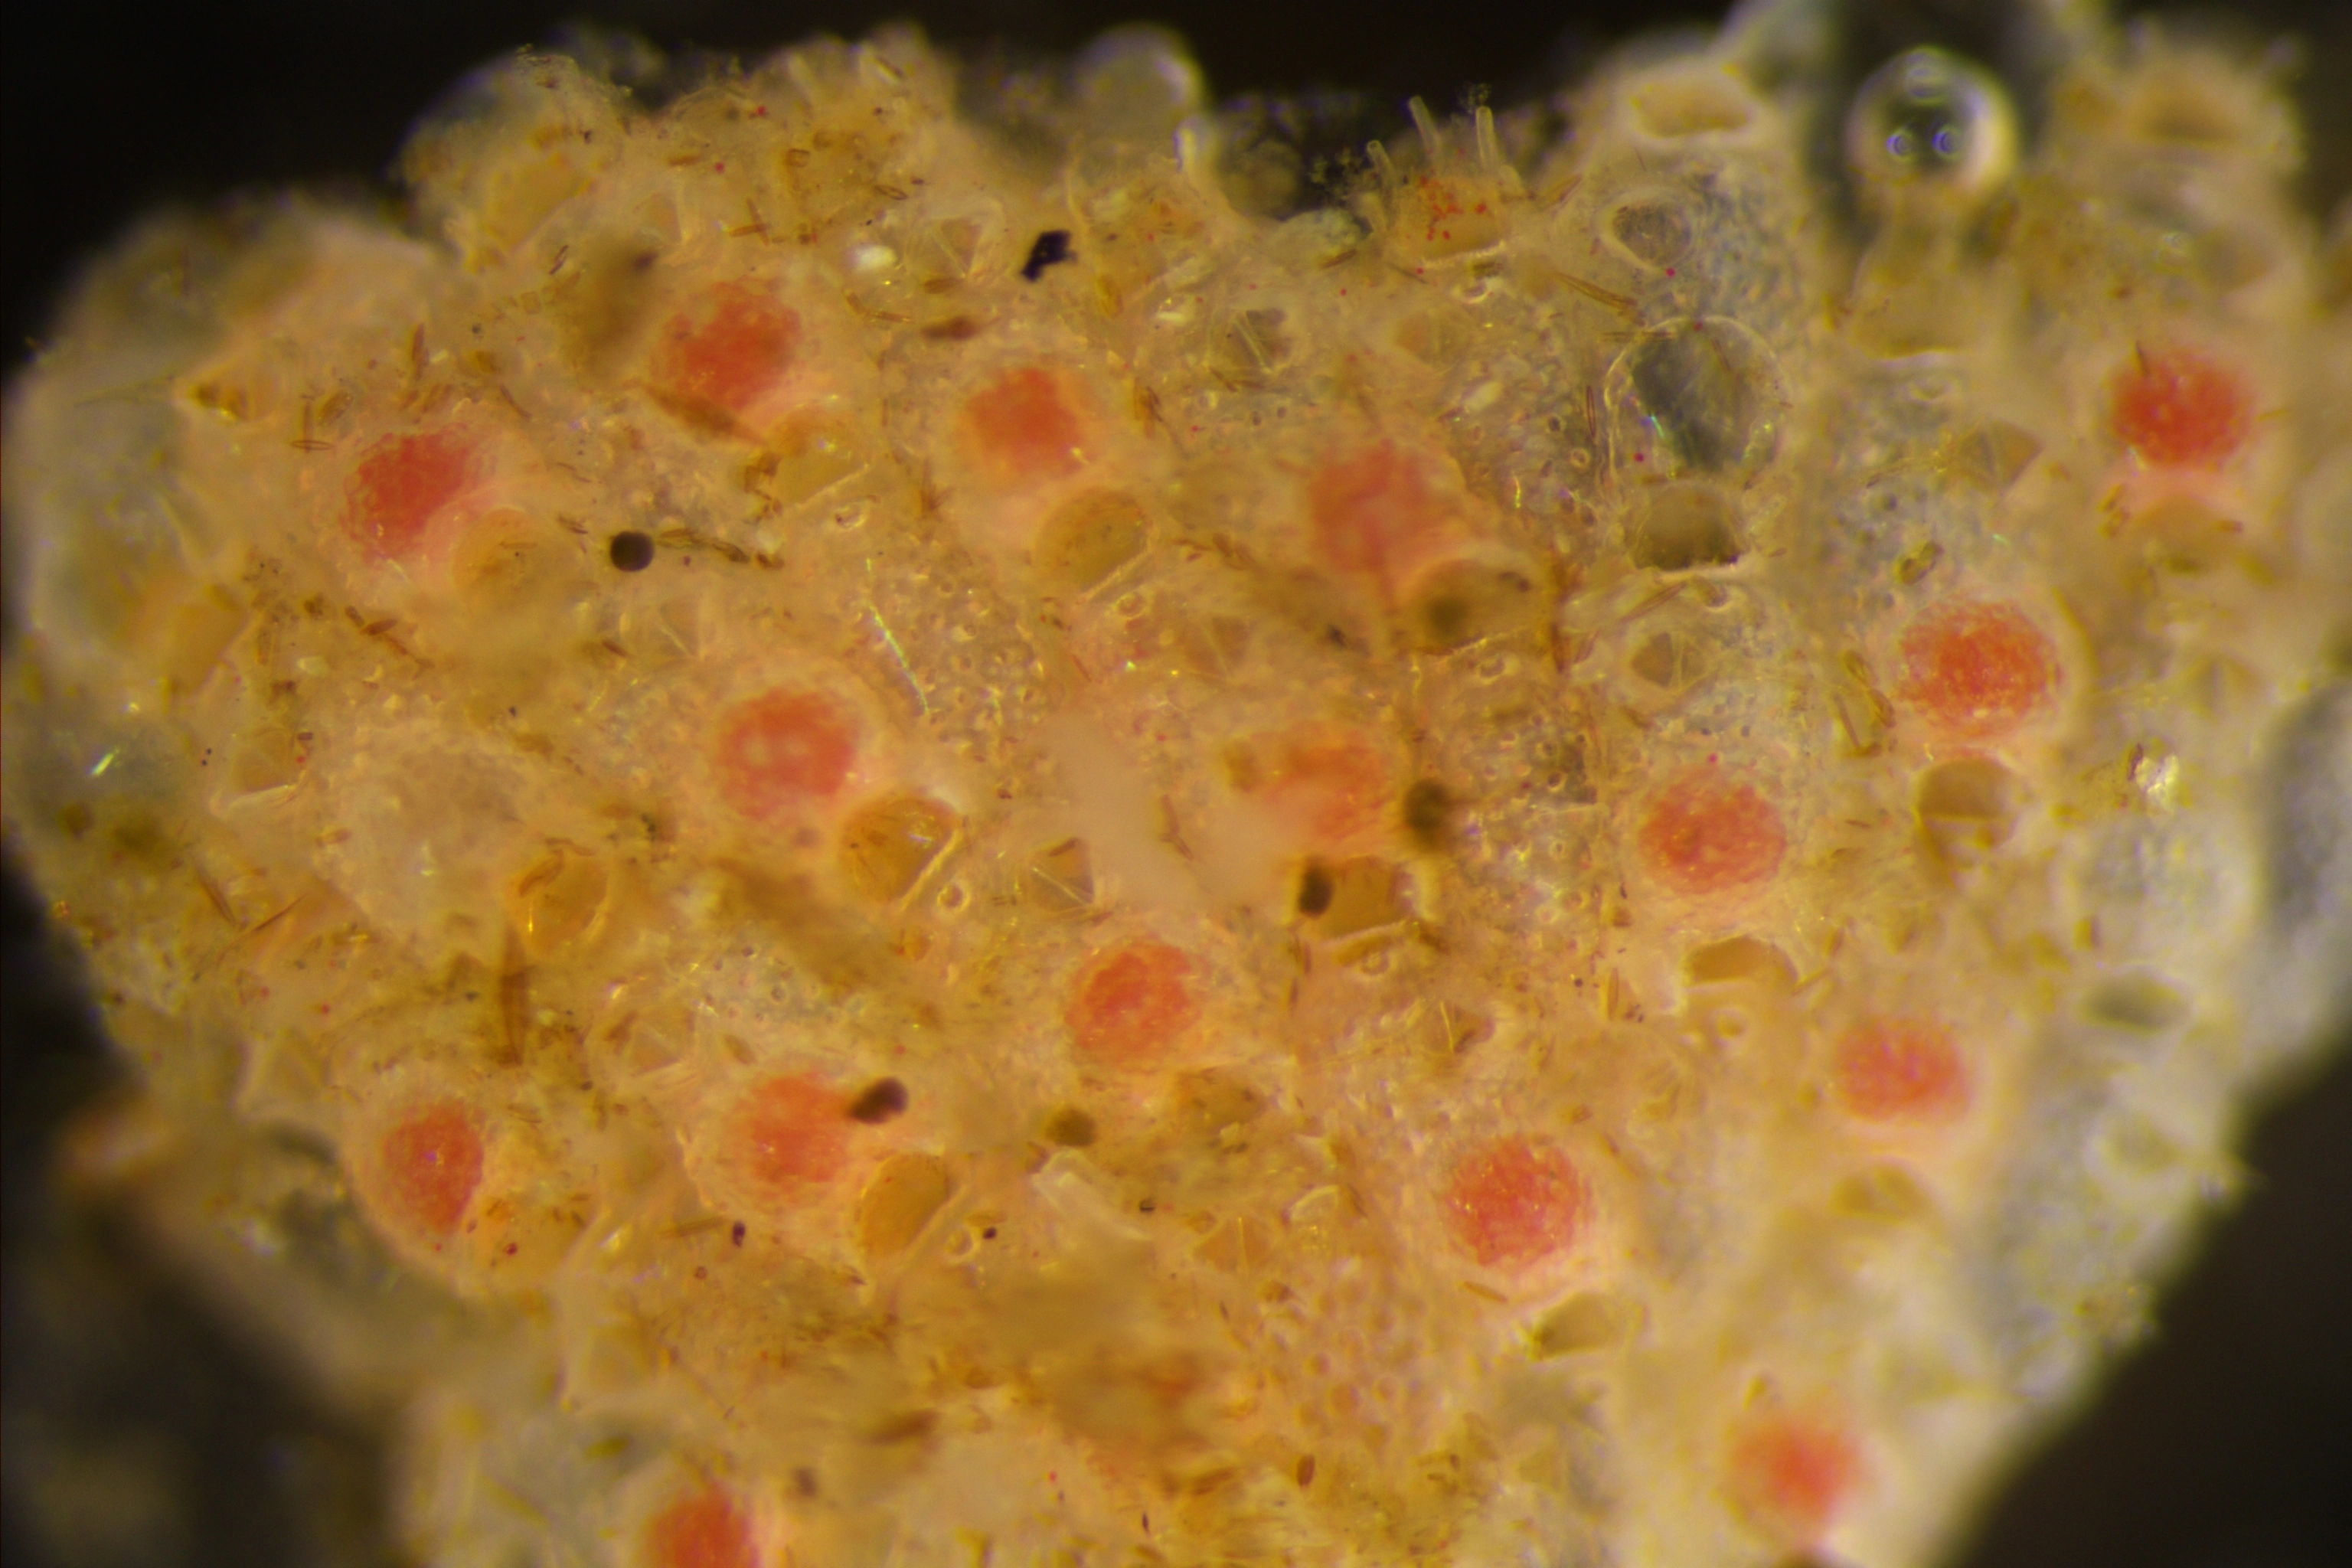 Mosdyr: Microporella ciliata.